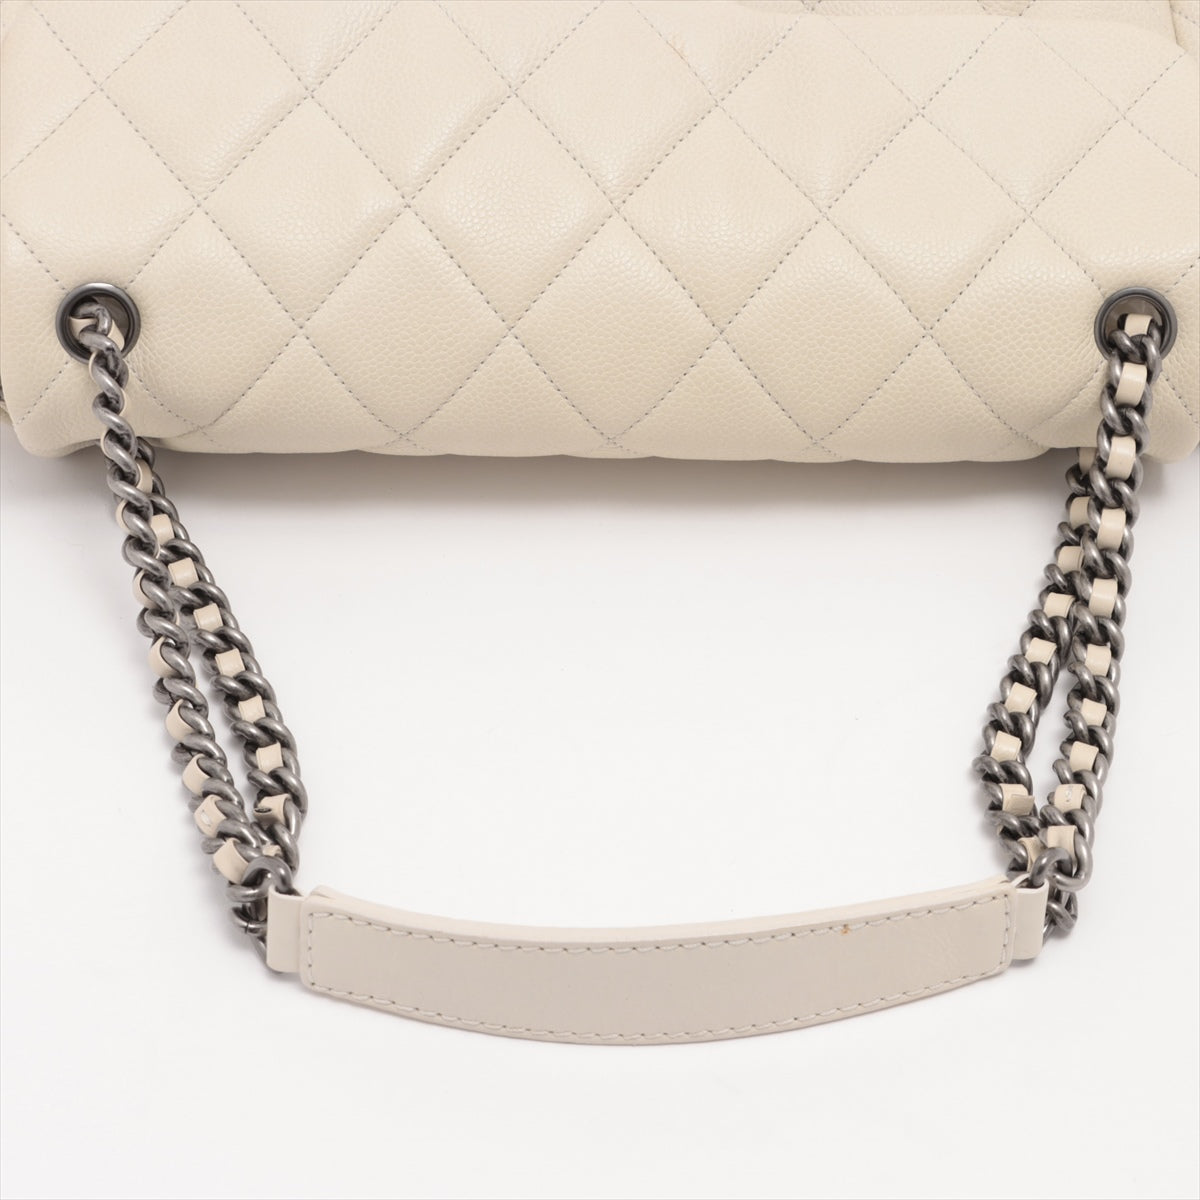 Chanel Matelasse Caviarskin Chain shoulder bag Beige Gunmetallic hardware 14XXXXXX